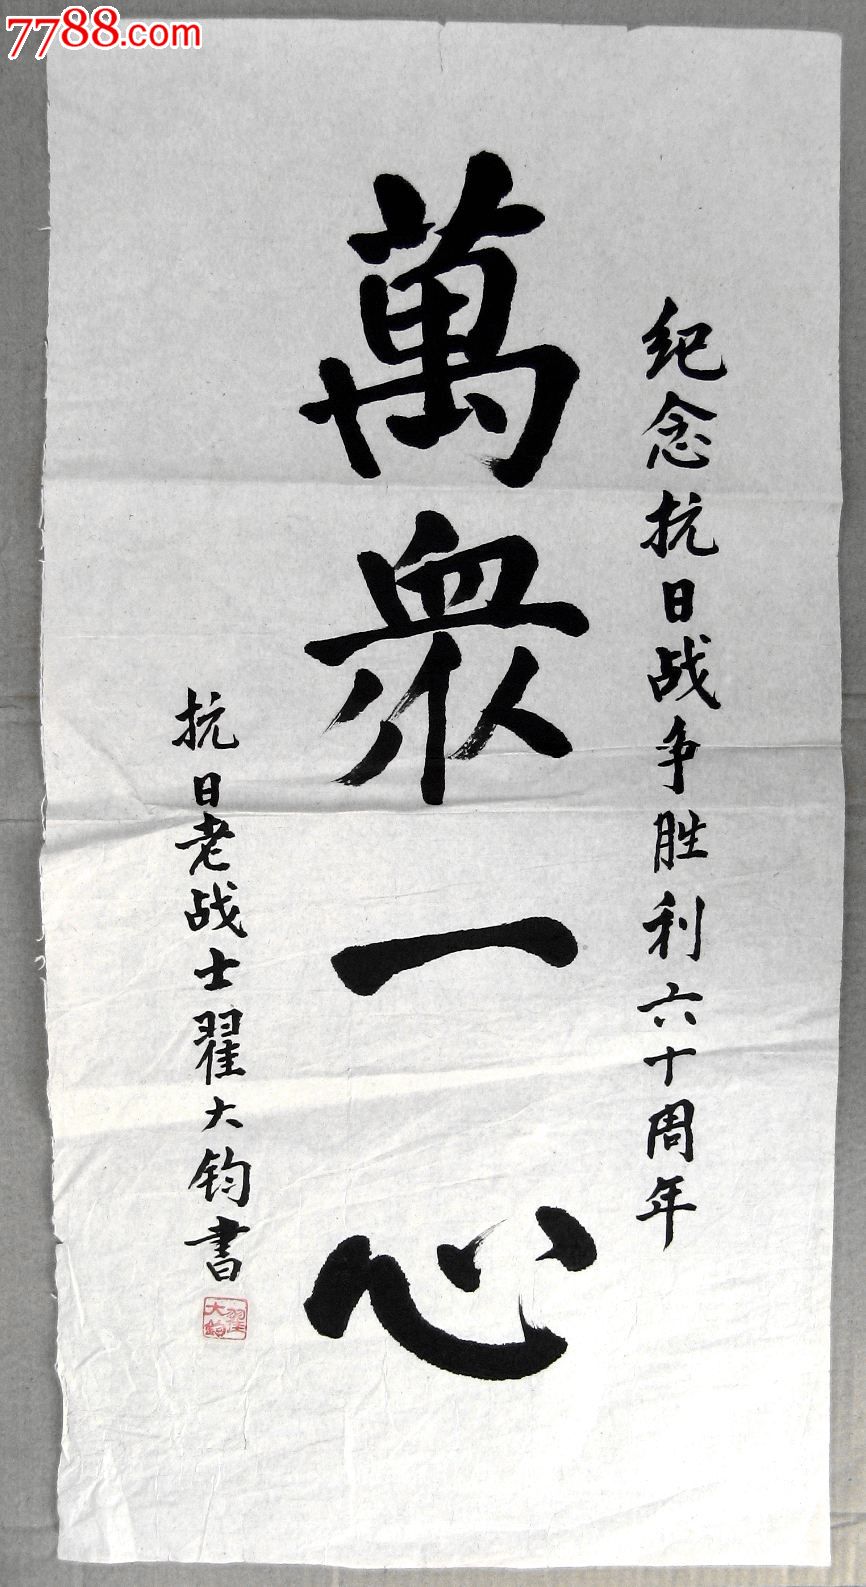 北京海淀区老书家二尺条幅楷书《万众一心》-书法原作-7788书画网